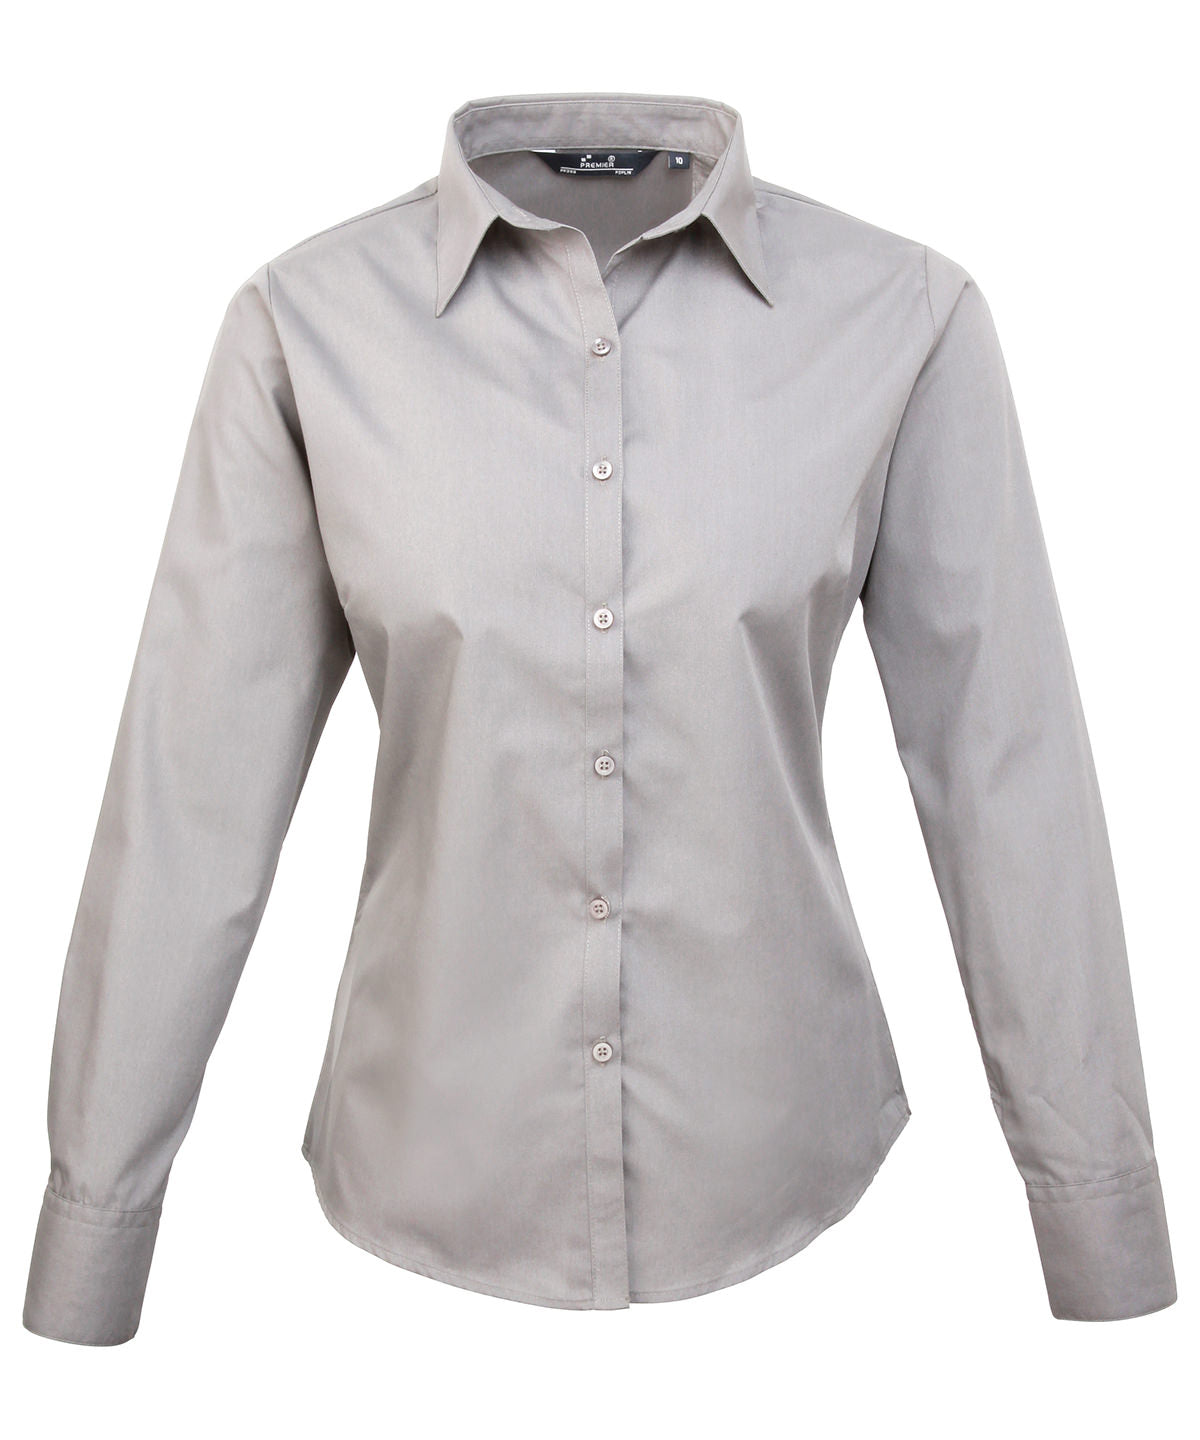 Premier Women's poplin long sleeve blouse Silver